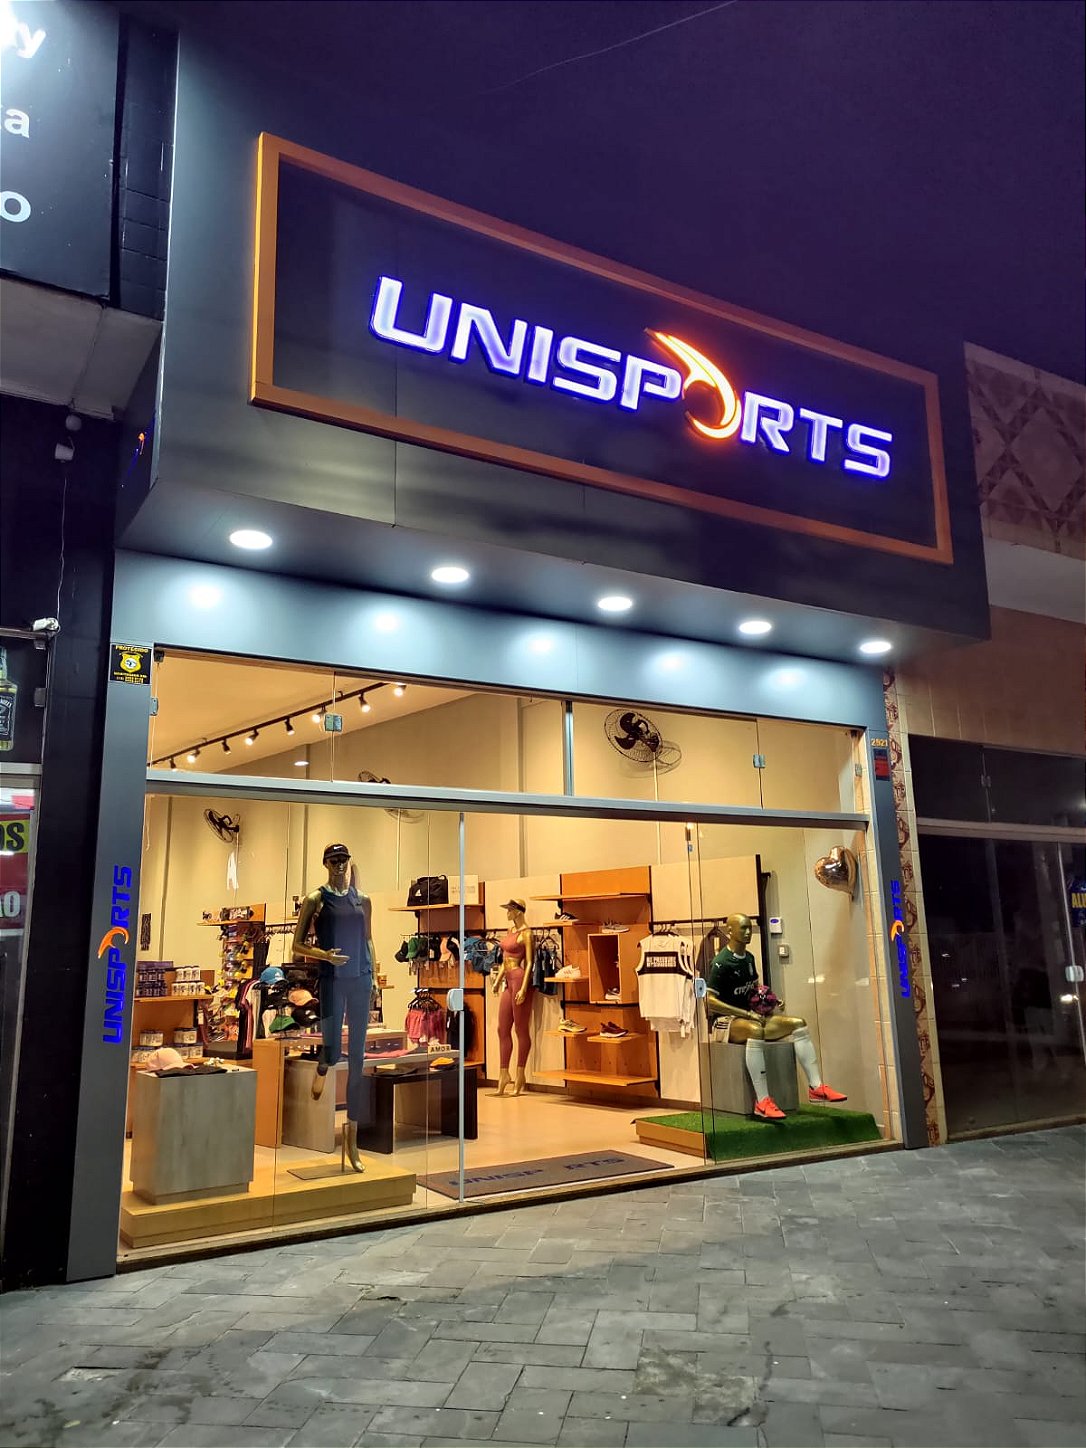 Fachada da loja Unisports na cidade de Peruíbe, litoral sul de São Paulo.